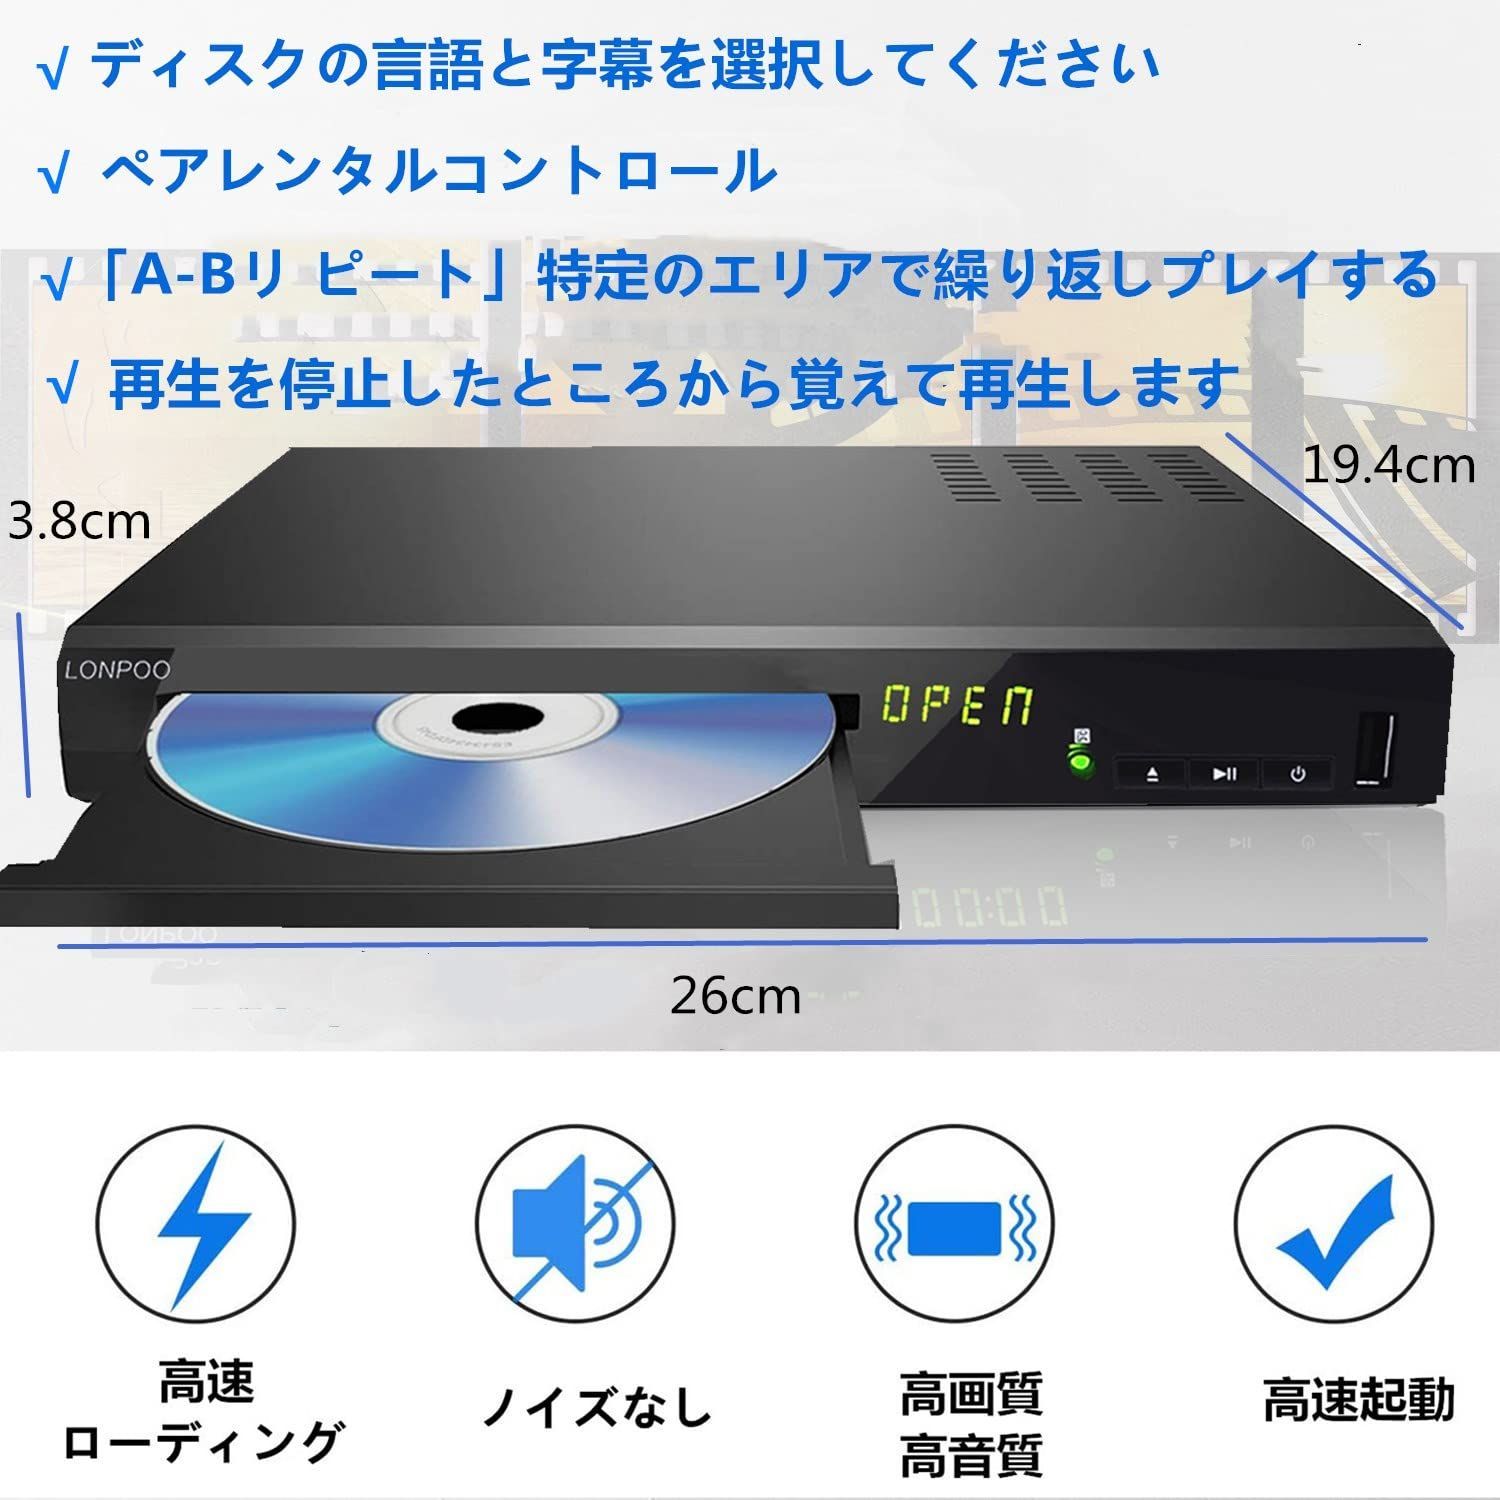 【色: 黑】LONPOO DVD ブルーレイプレーヤー フルHD1080p DV